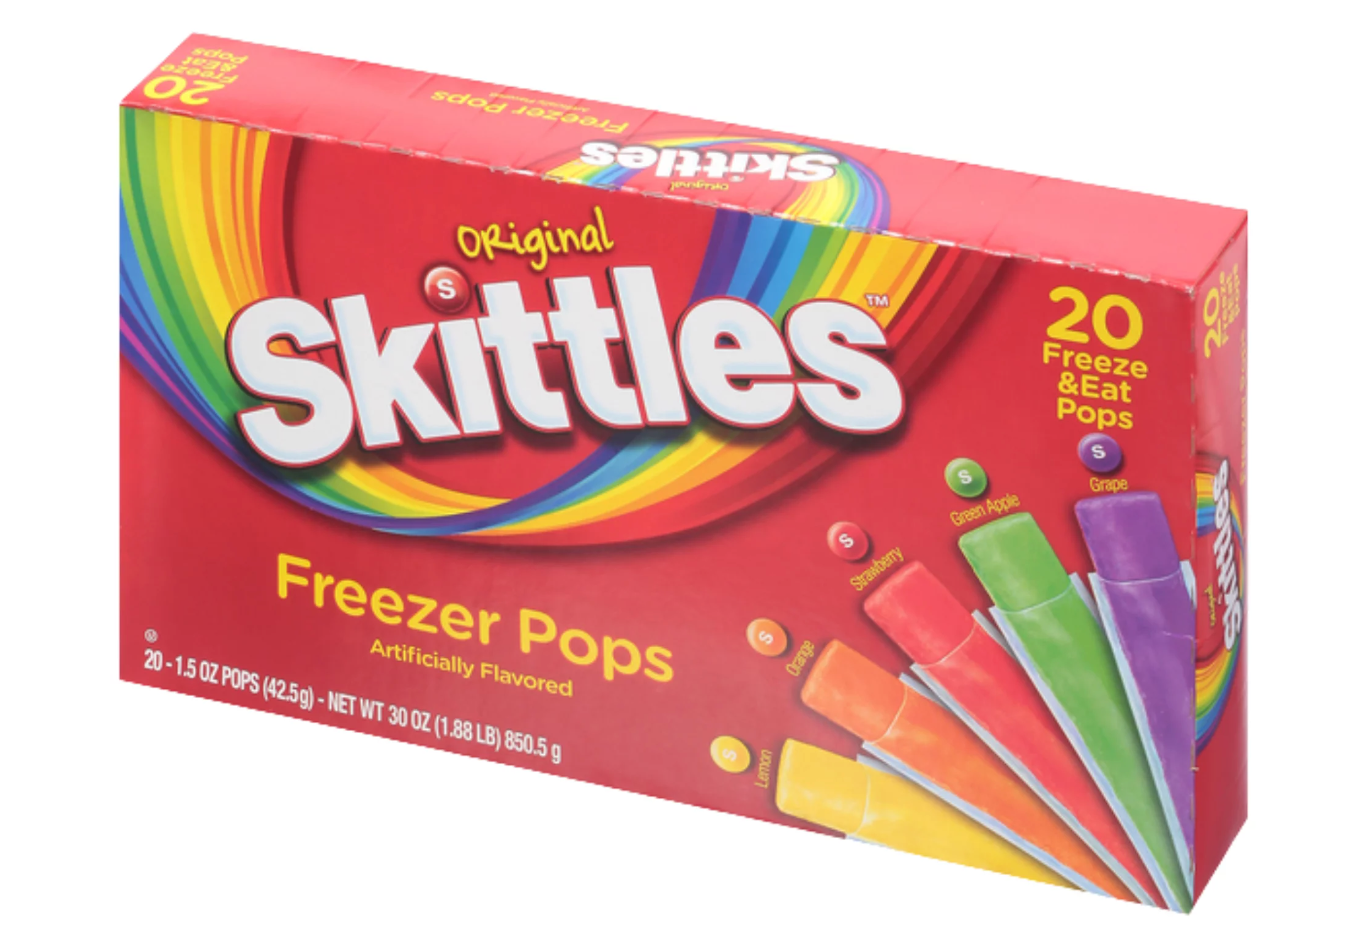 Assorted Skittles Freezer Pops (UK) - 20 pack (1 box)